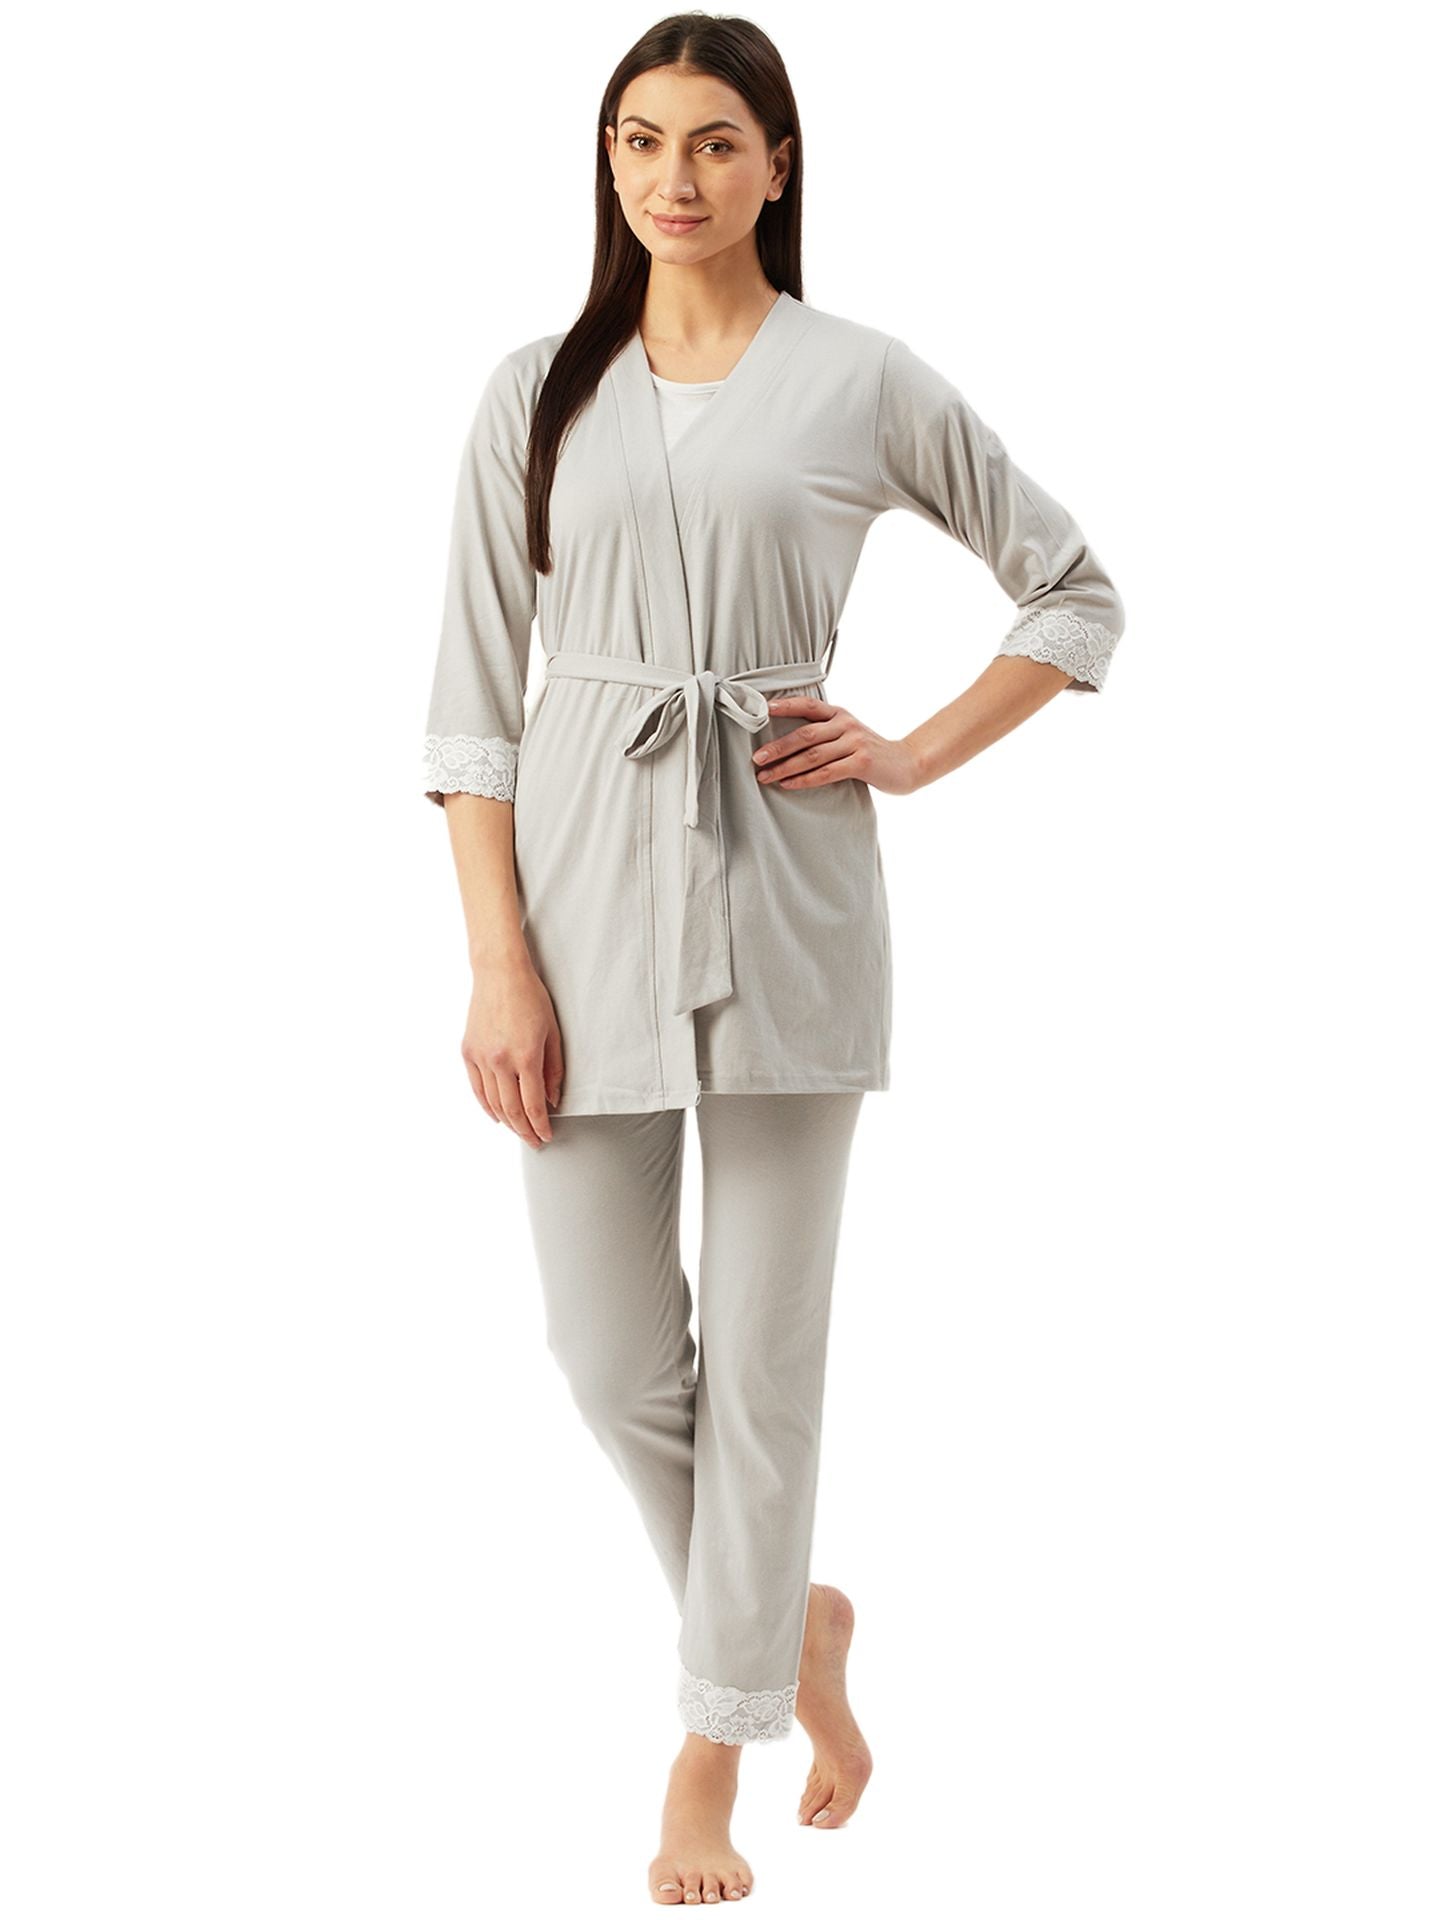 Klamotten Women's Top & Pyjama Nightsuit N105Z